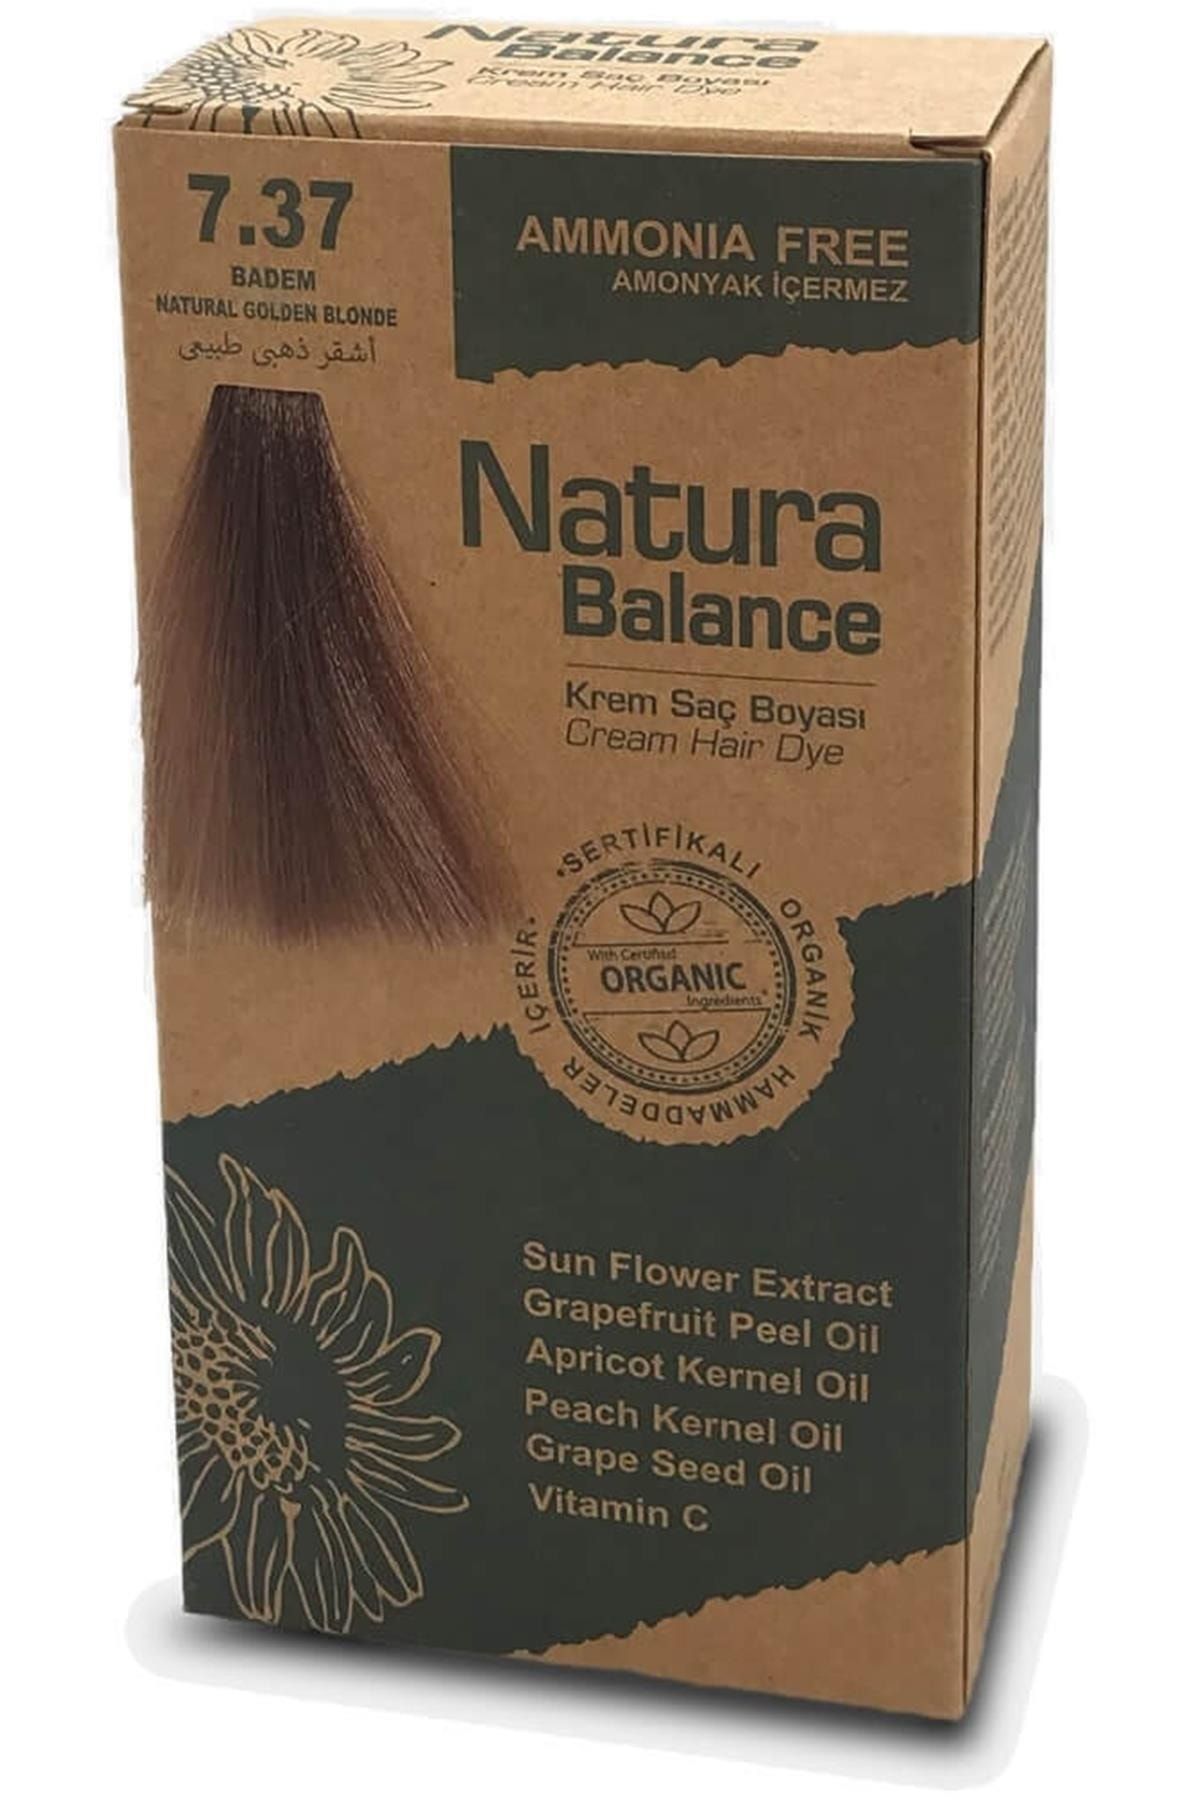 NATURABALANCE Natura Balance 7.37 Badem Organik Krem Saç Boyası